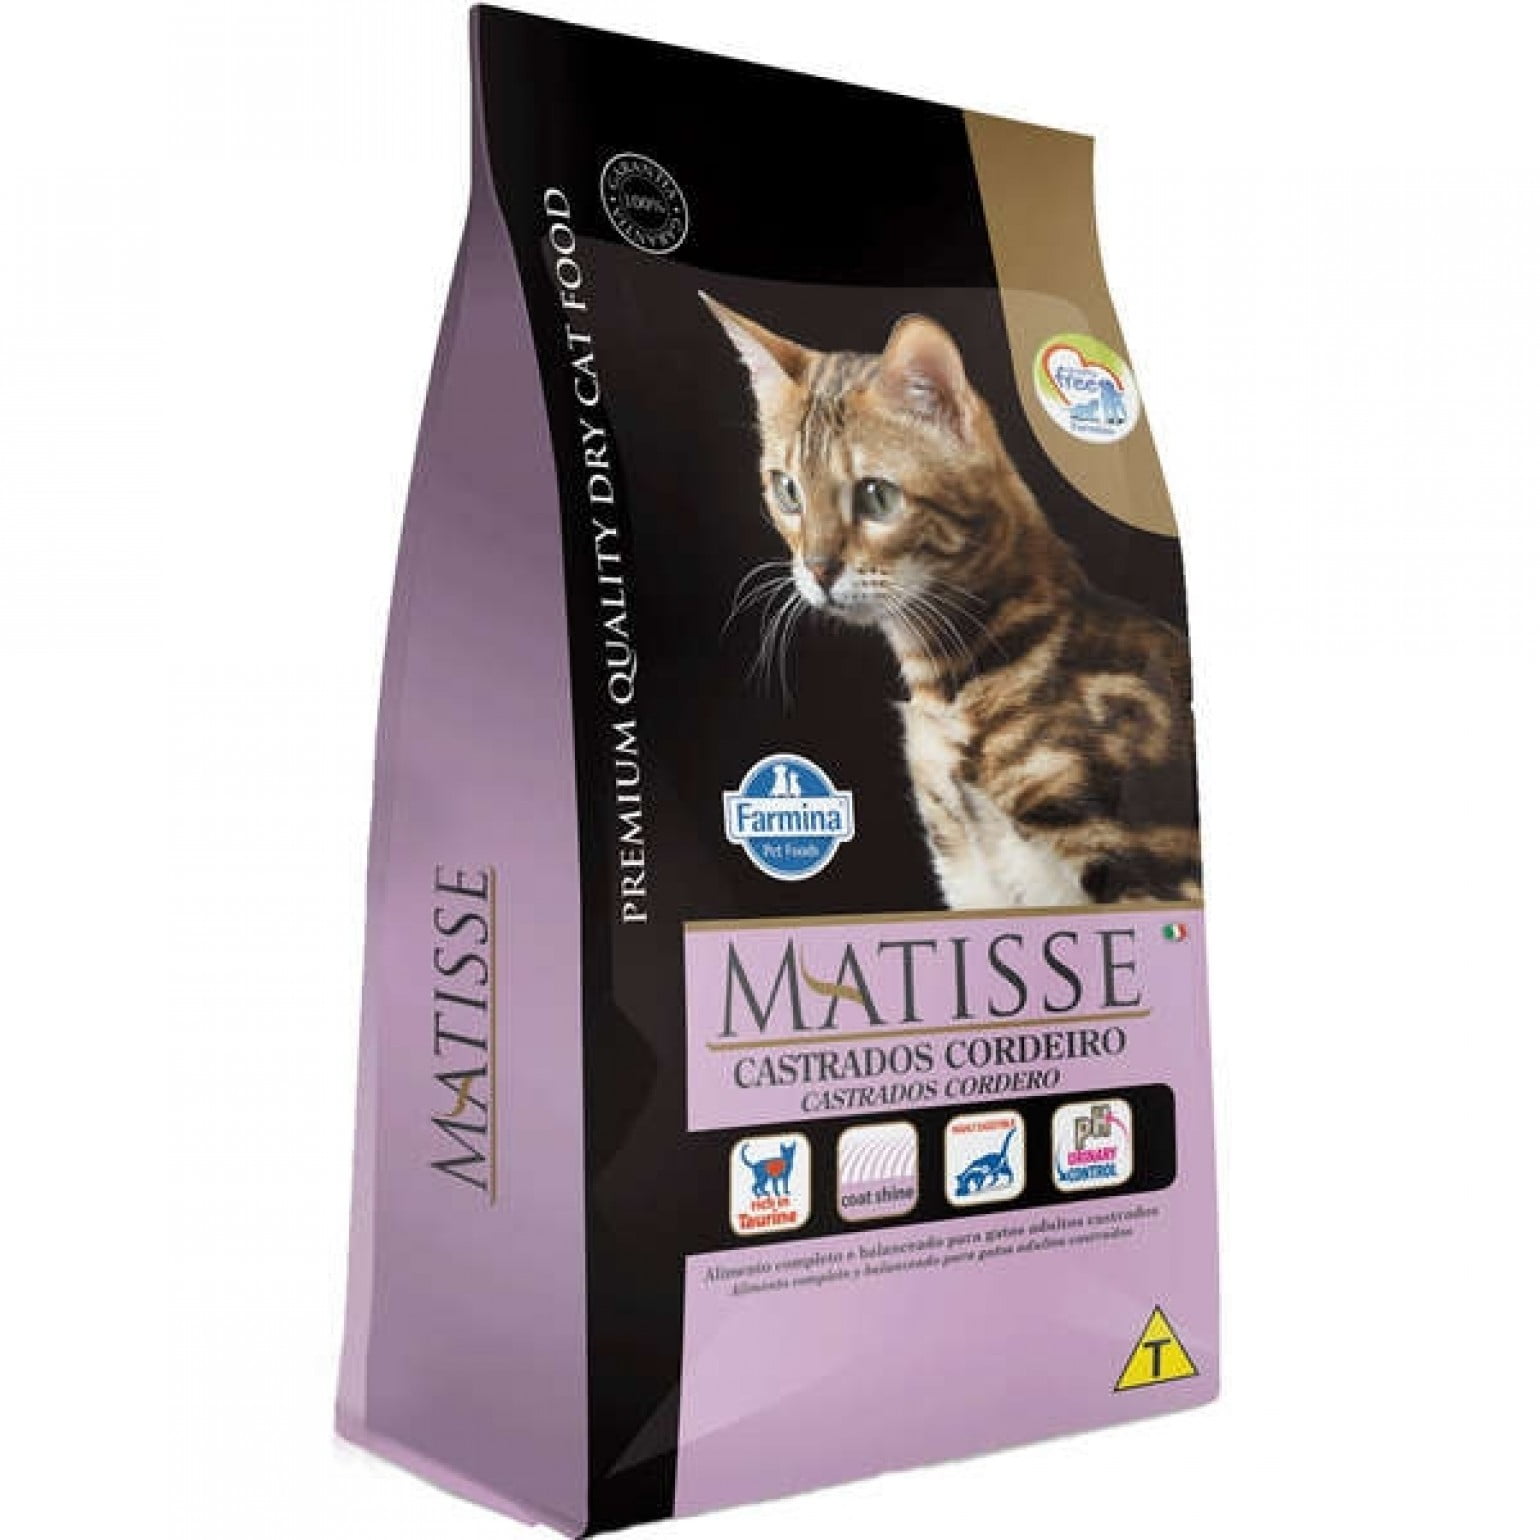 Ração Farmina Matisse para Gatos Adultos Castrados Cordeiro - 800g